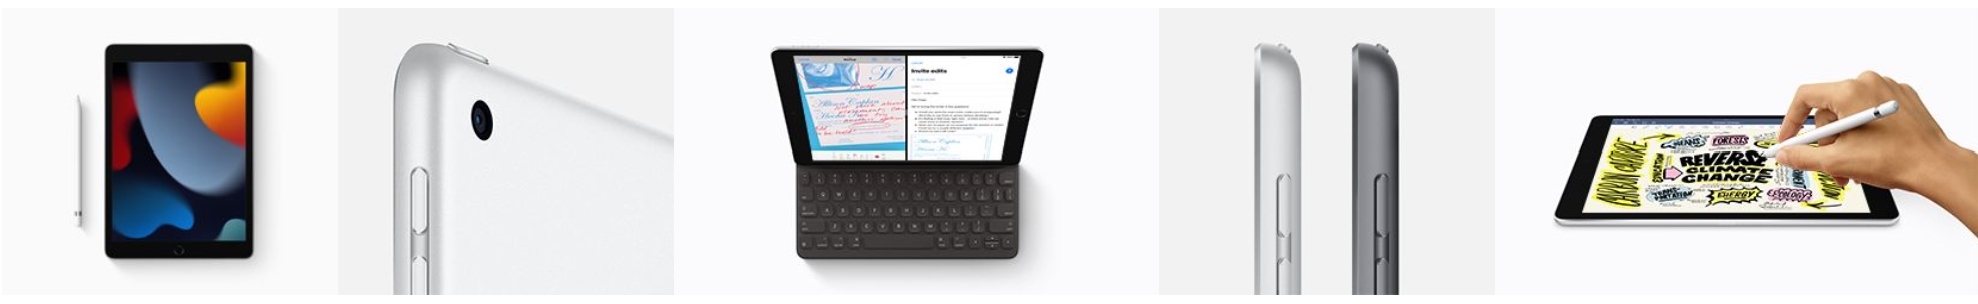 iPad 10.2 2021